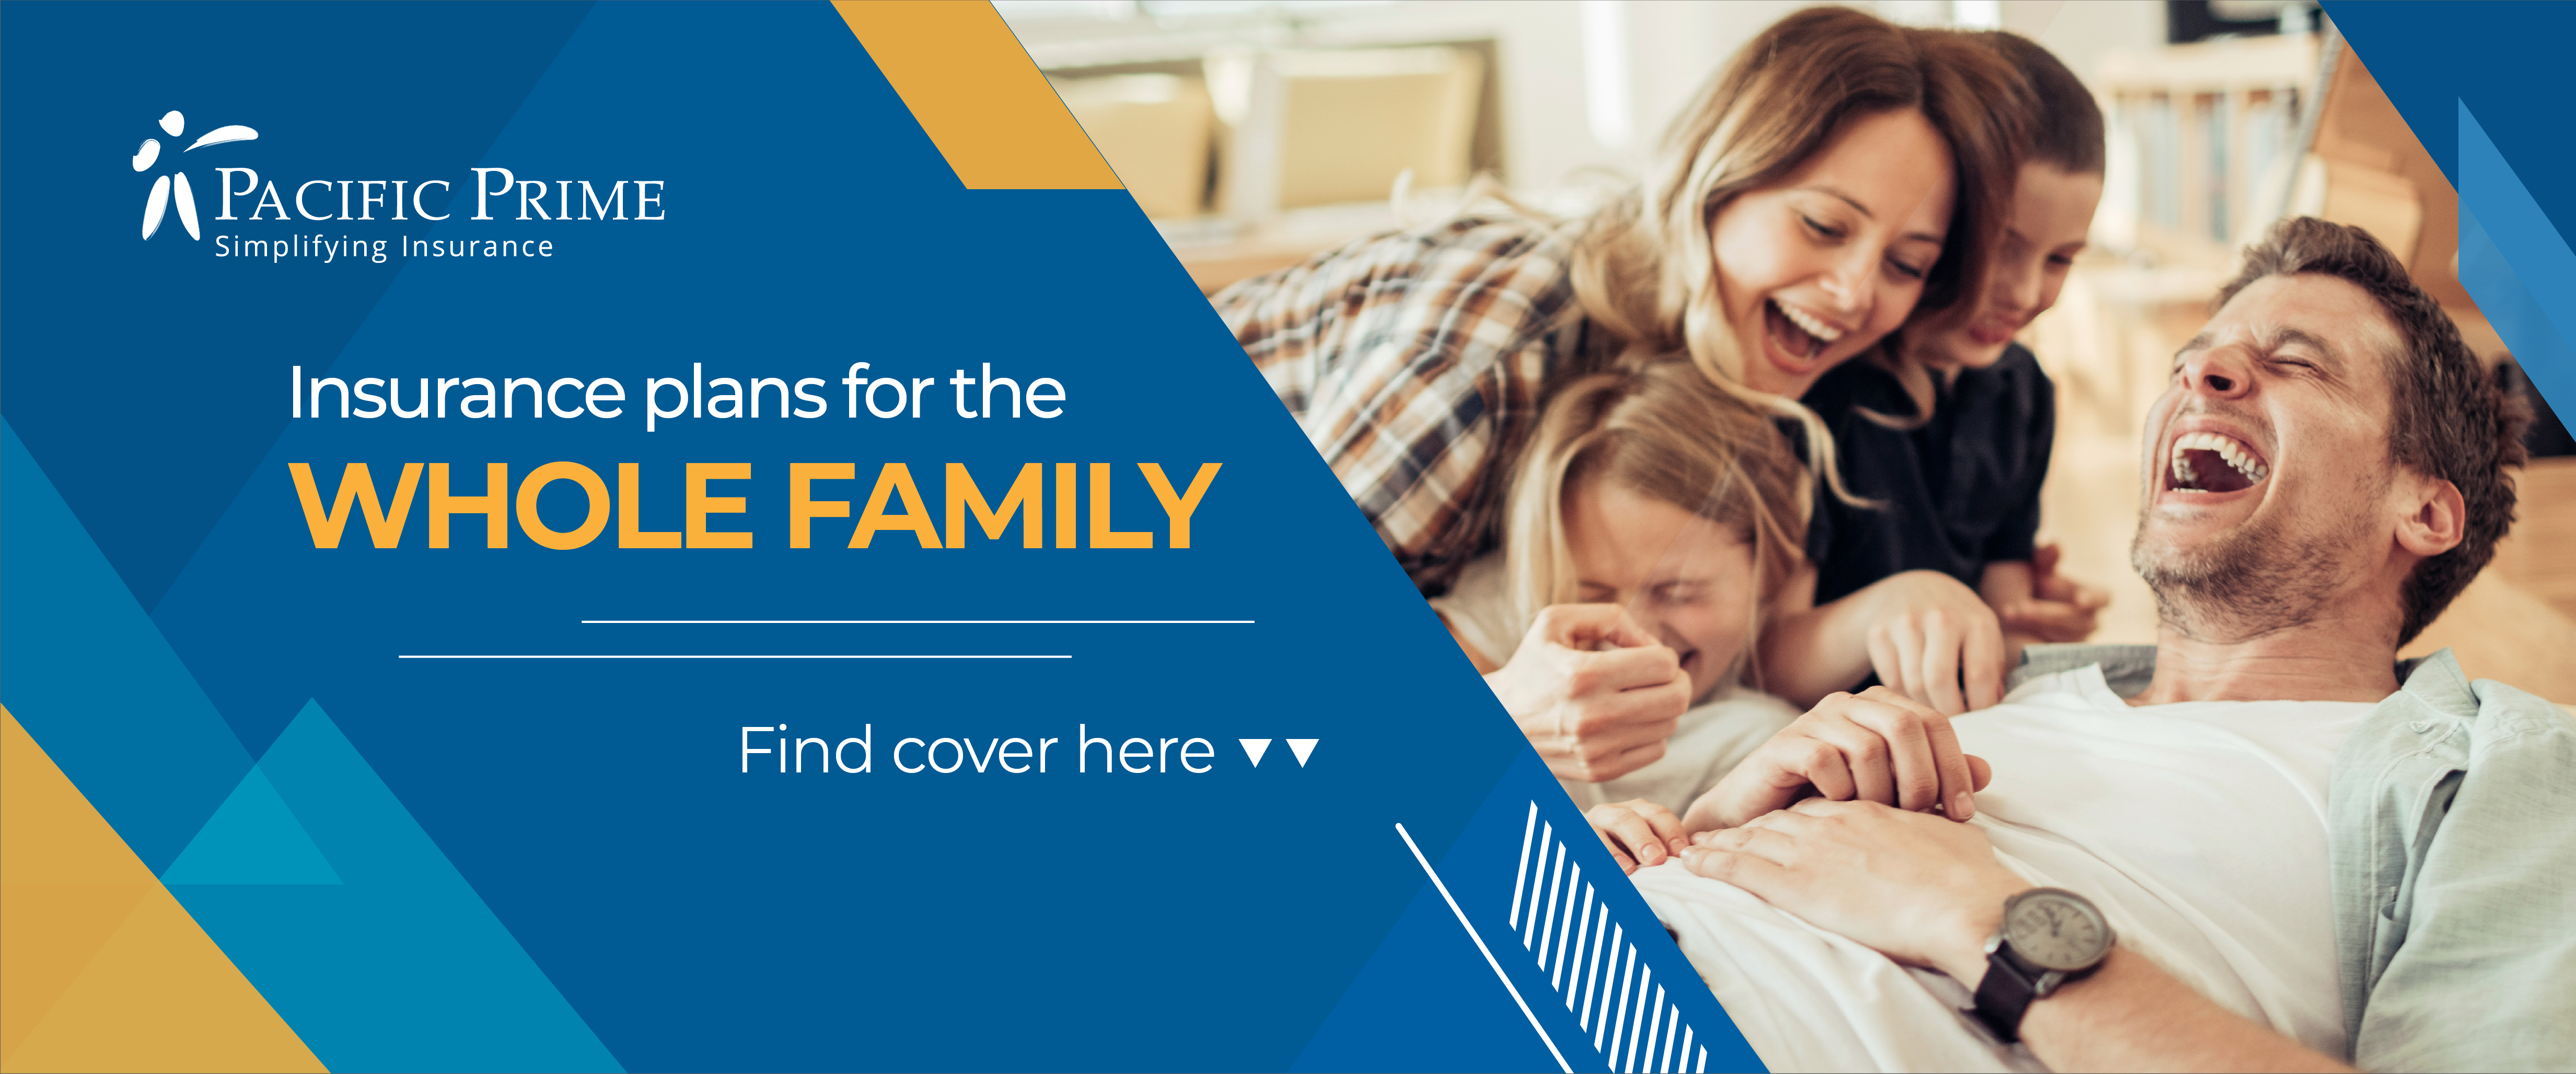 Family insurance banner